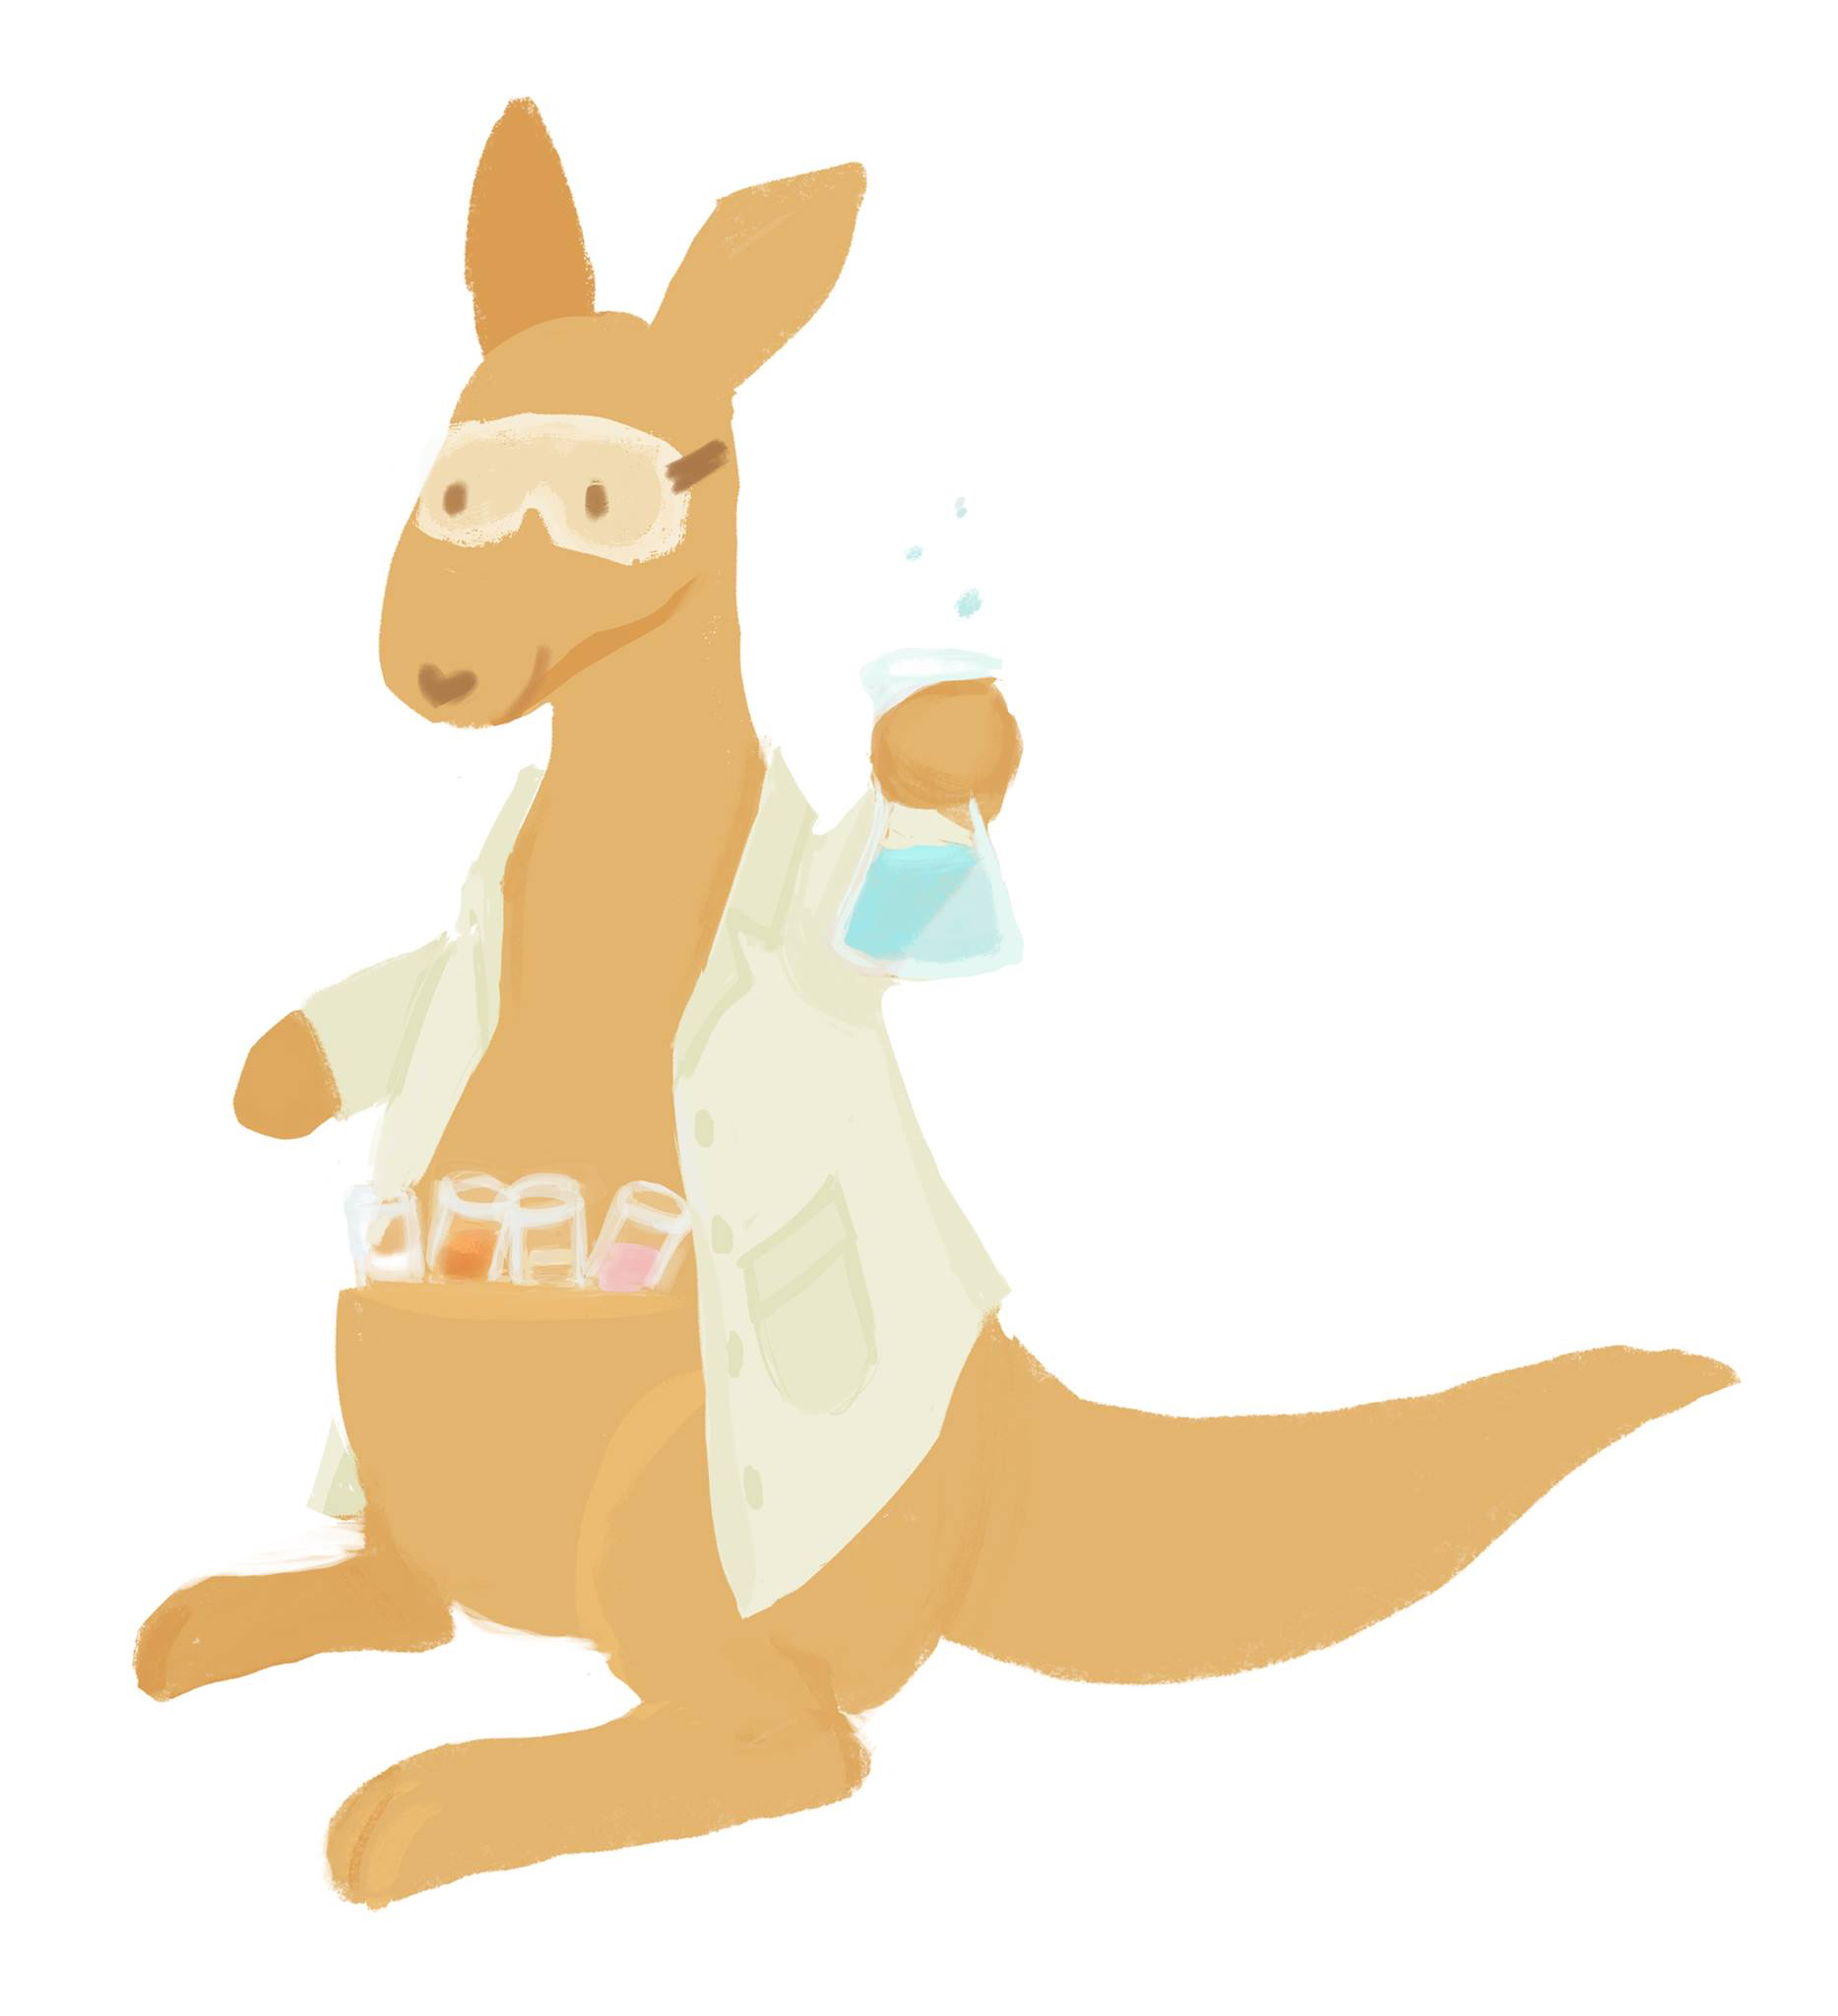 Kangaroo chemist